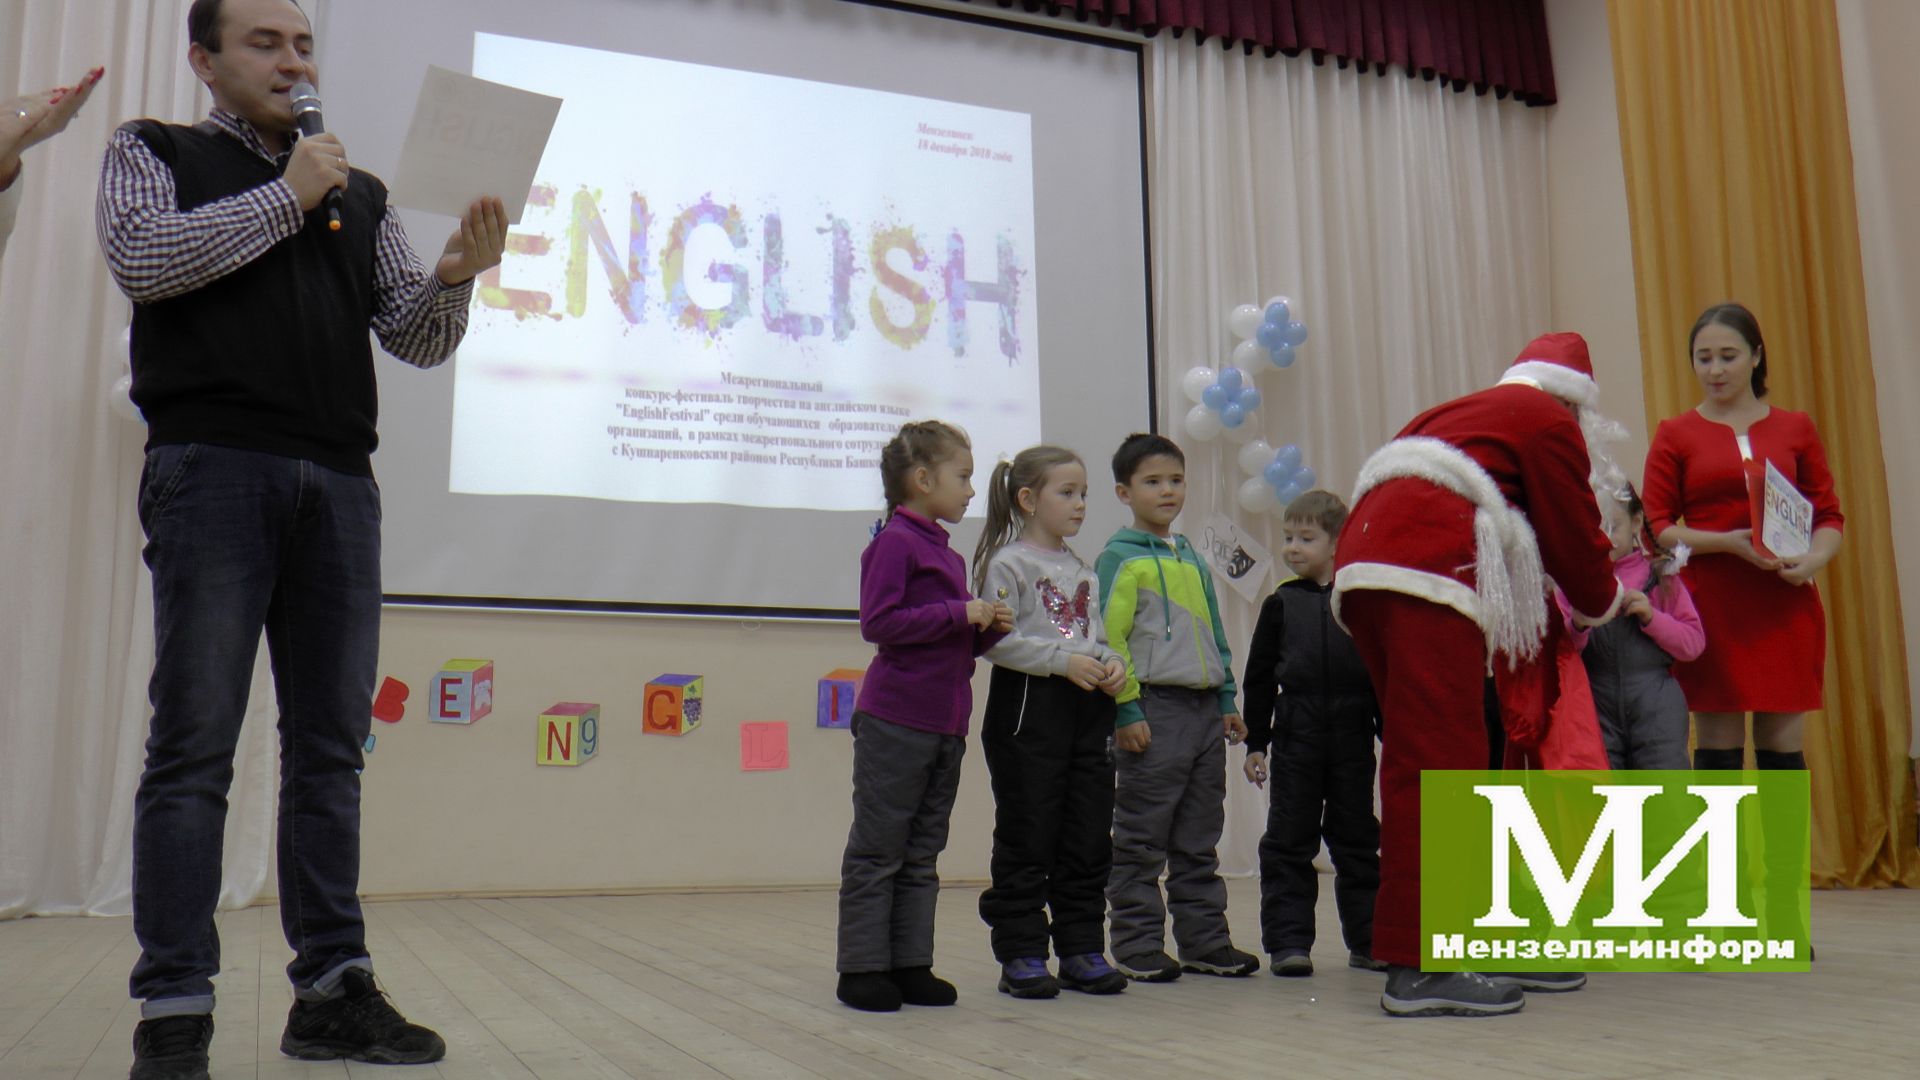 Мензелинские дети показали свои знания английского языка